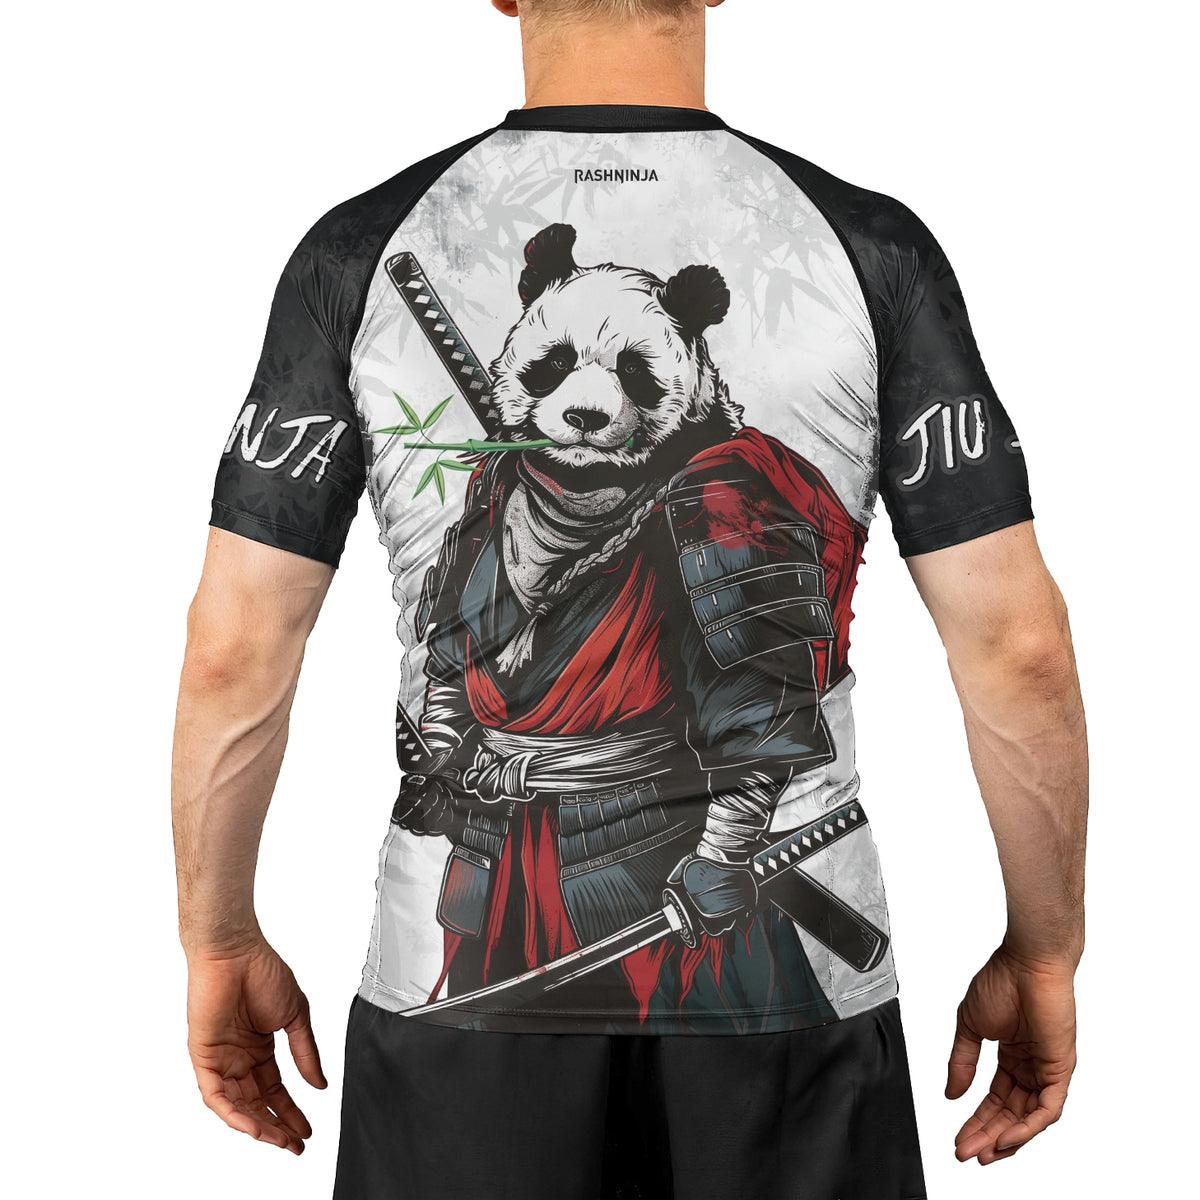 Rashninja Mystic Warrior Panda Samurai Men's Short Sleeve Rash Guard - Rashninja LLC